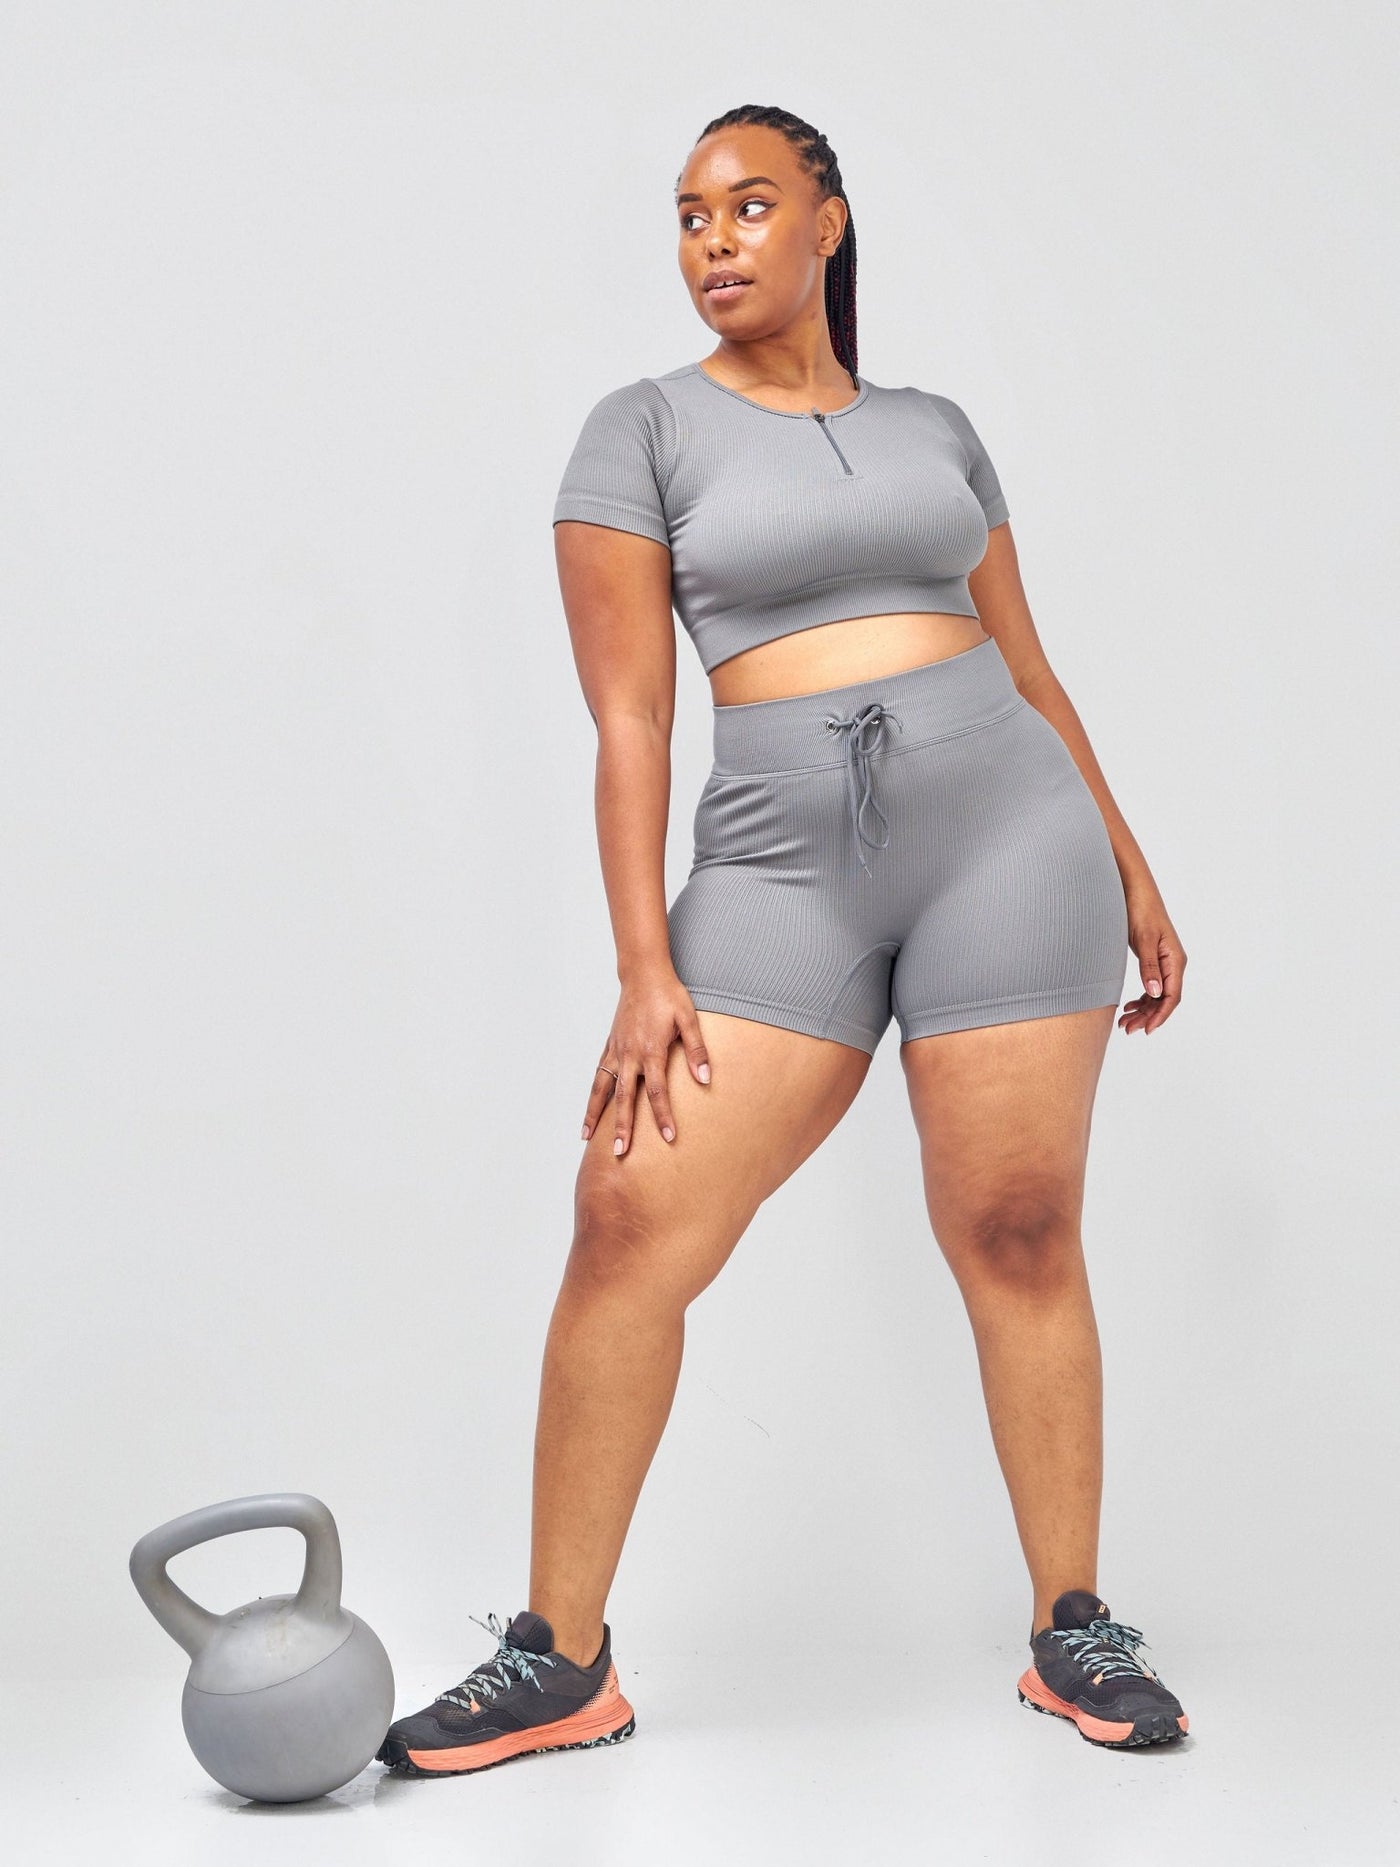 Ava Fitness Lizzy 5 piece Gym Set - Grey - Shopzetu